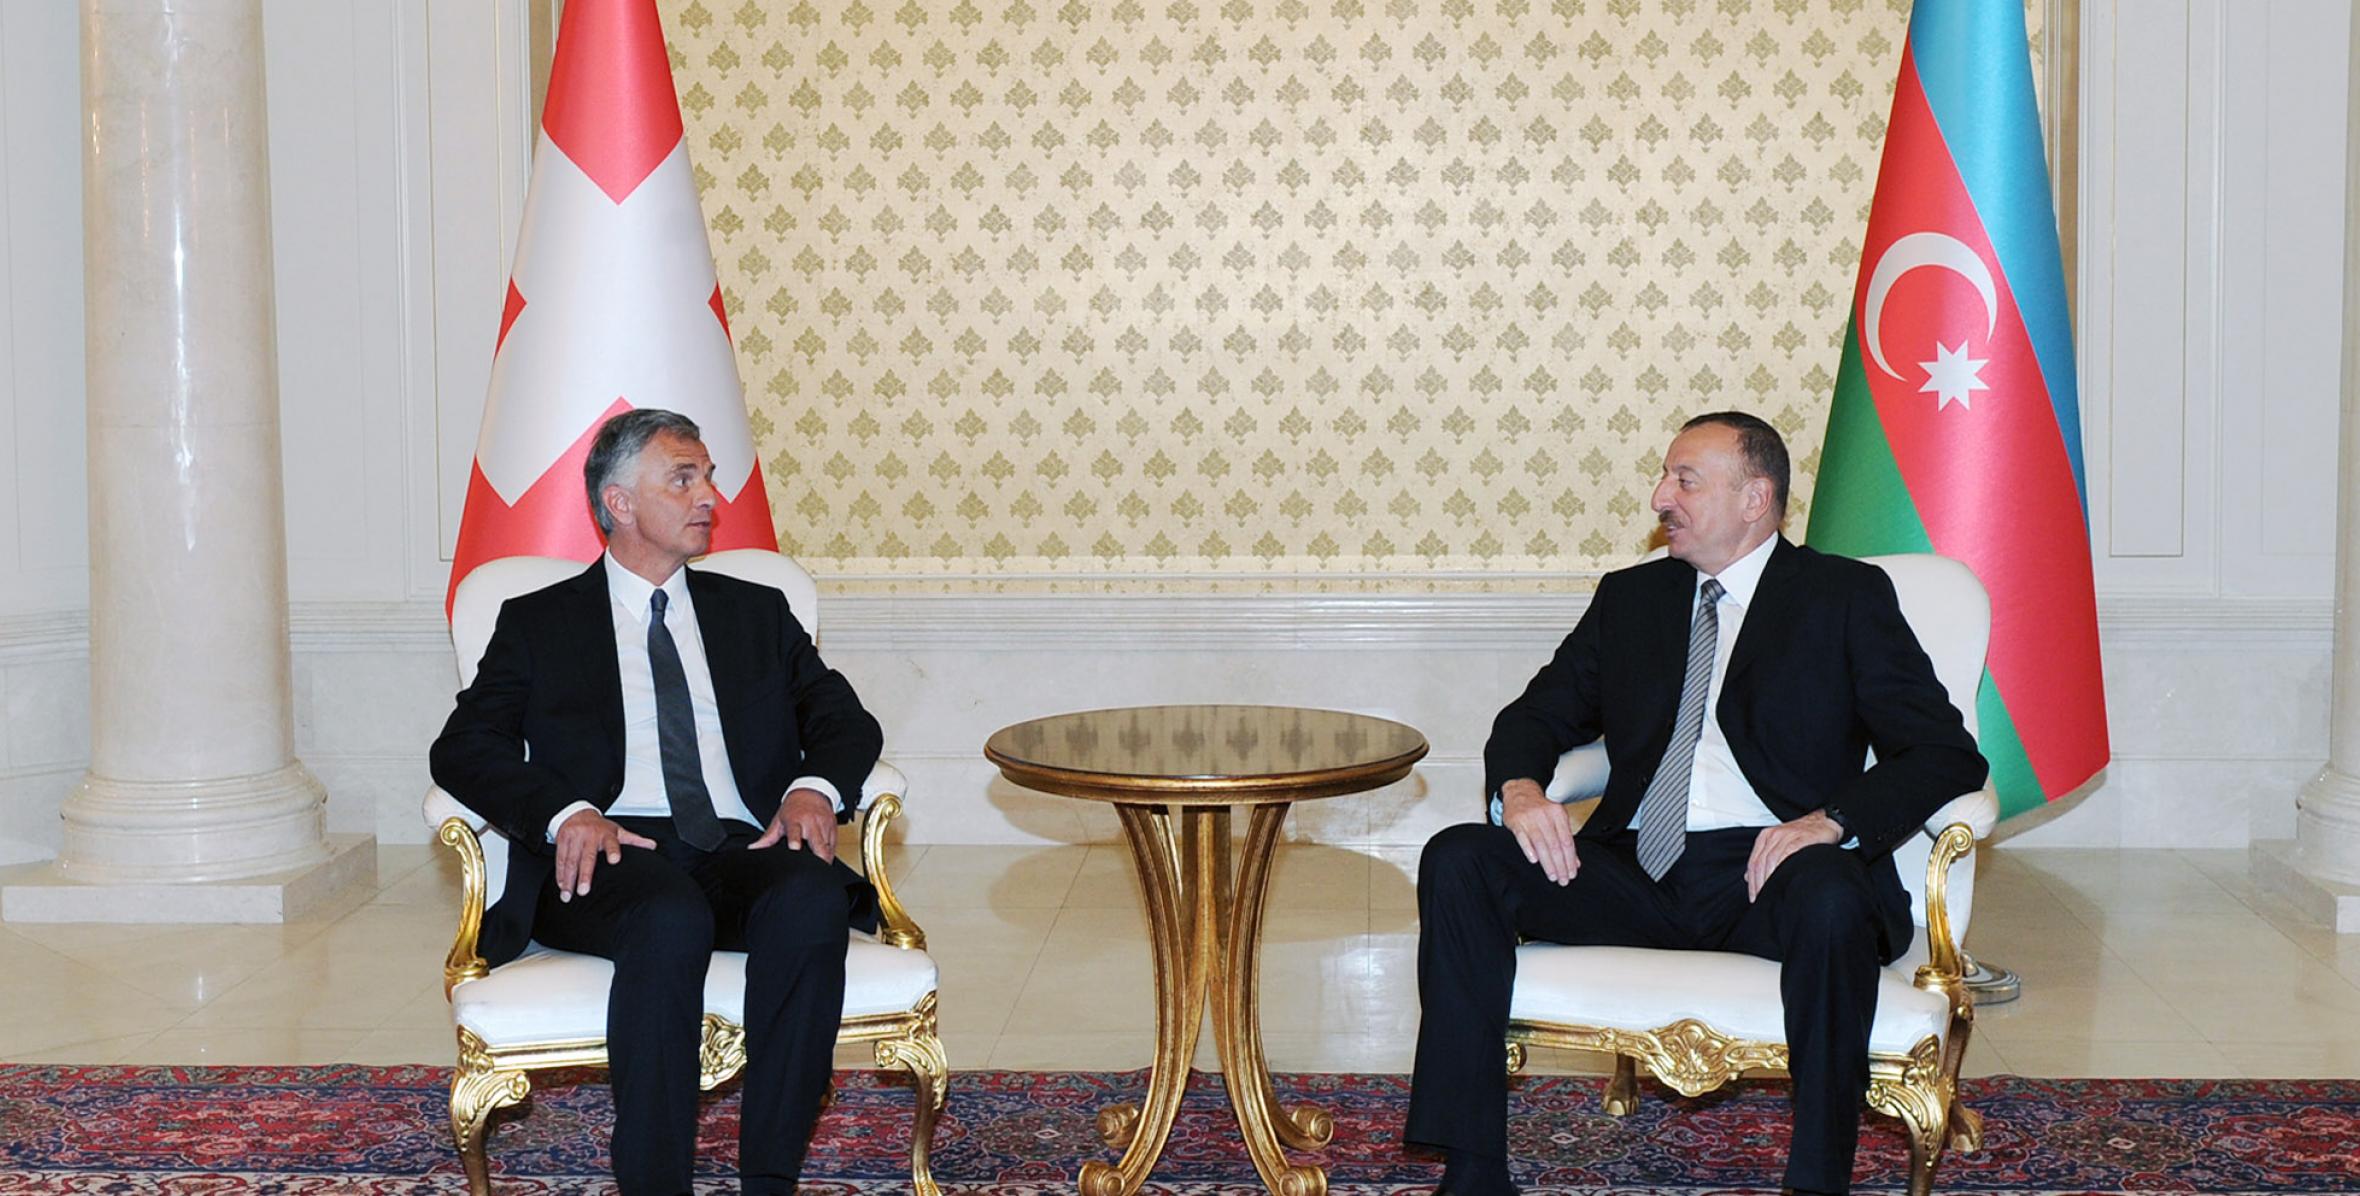 Состоялась встреча Ильхама Алиева и Президента Швейцарии Дидье Буркхальтера один на один